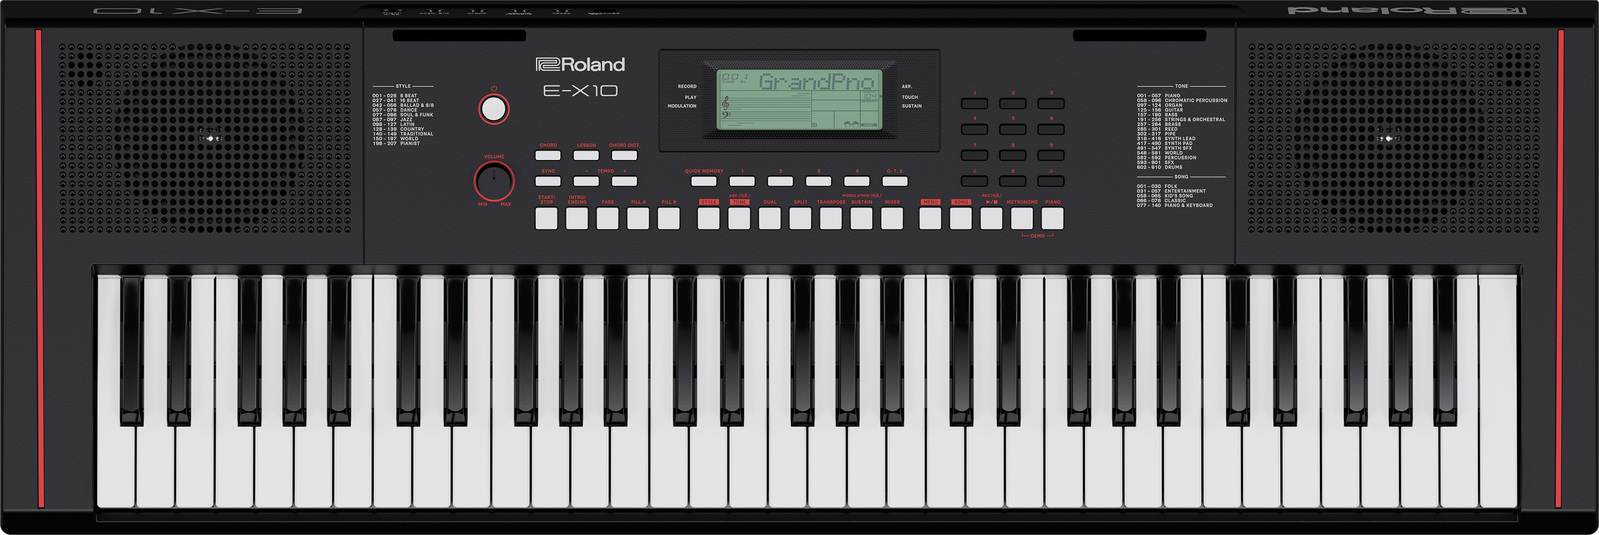 Roland E-x10 keyboard